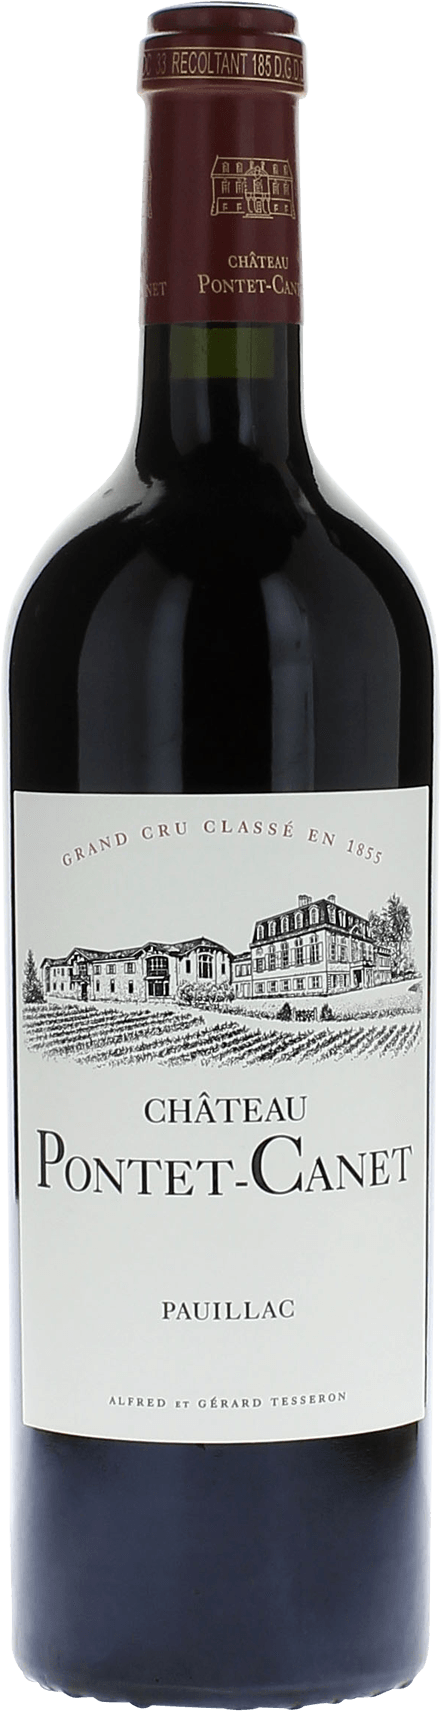 Pontet canet 2018 5me Grand cru class Pauillac, Bordeaux rouge